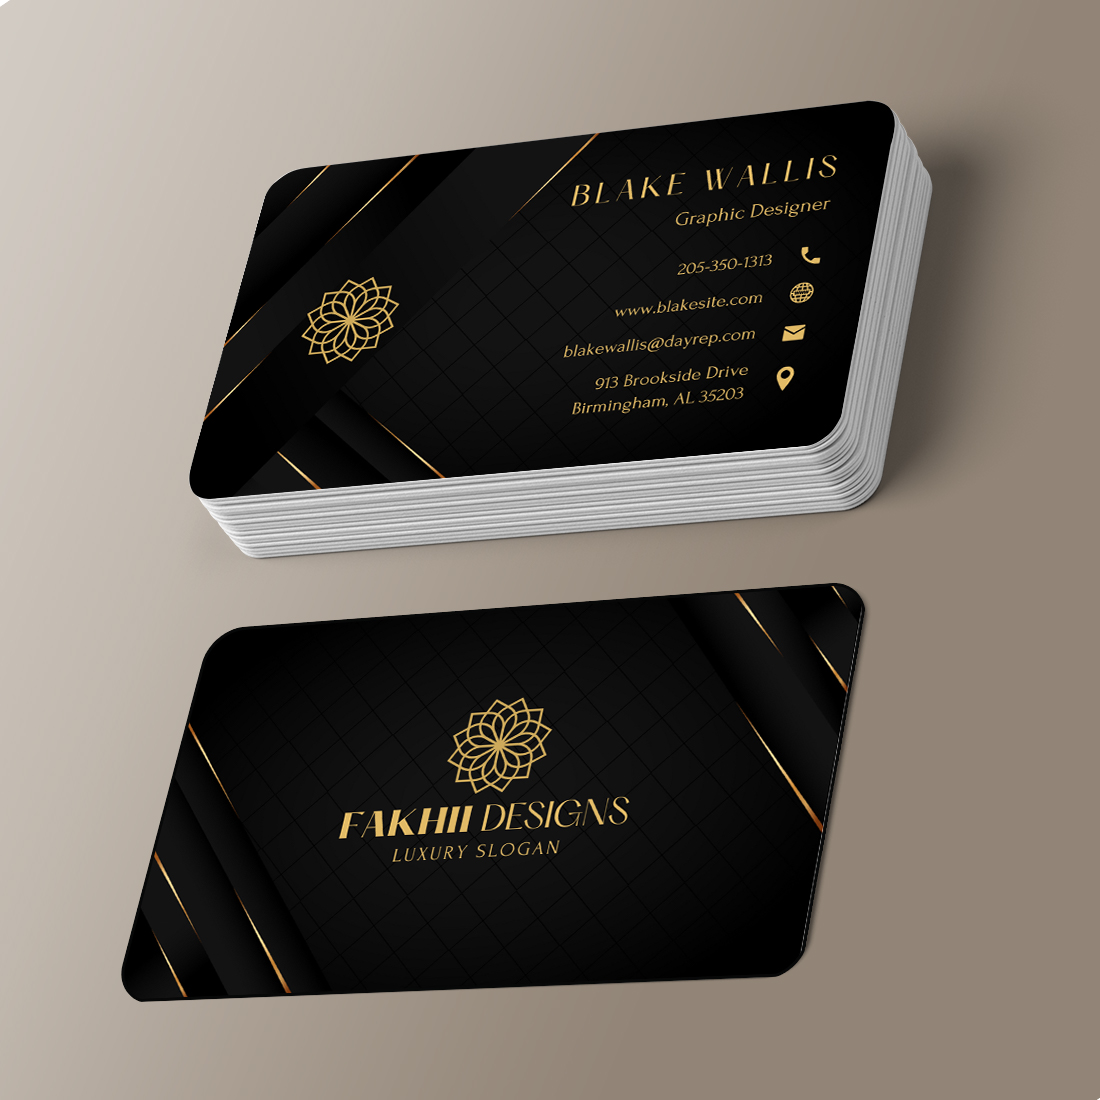 Black & Gold Modern Elegant Business Card Design | Aesthetic Editable Business Card | DIY Business Card | Canva Templates | Canva Business Cards Template | Business Card Template cover image.